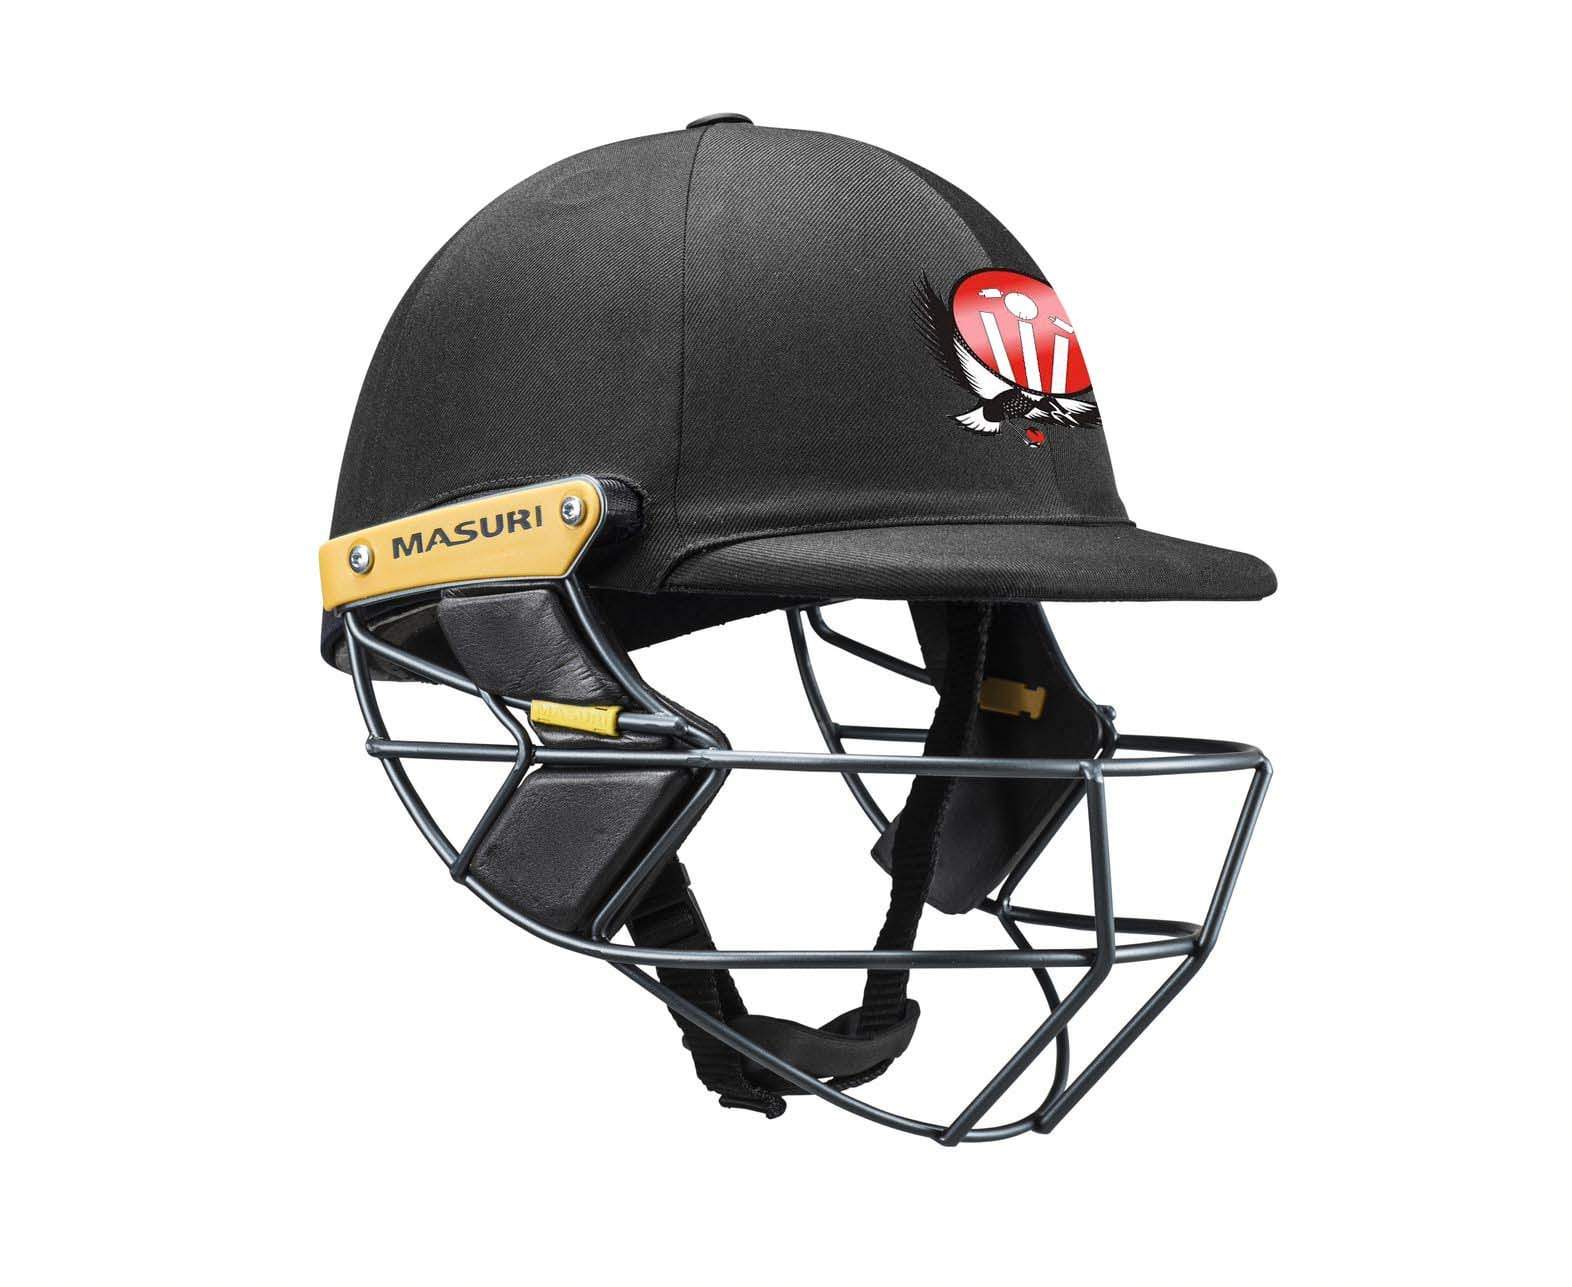 Masuri Club Helmet Laverton Cricket Club Helmet